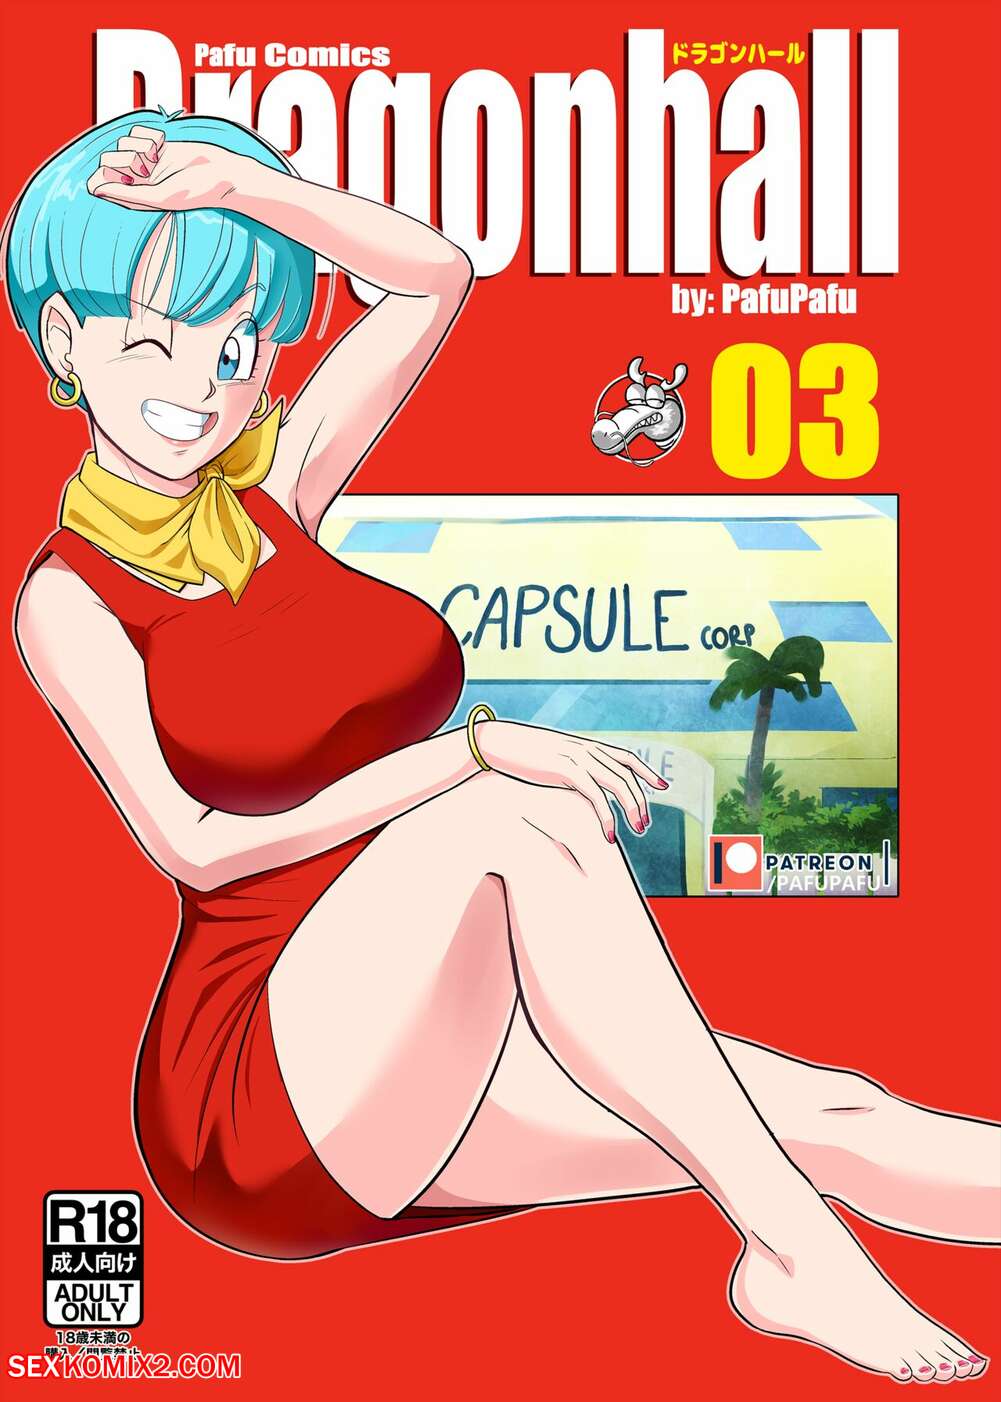 Bulma Xxx - âœ…ï¸ Porn comic Gohan vs Bulma. Dragon Ball Z. PafuPafu Sex comic beauty MILF  was | Porn comics in English for adults only | sexkomix2.com